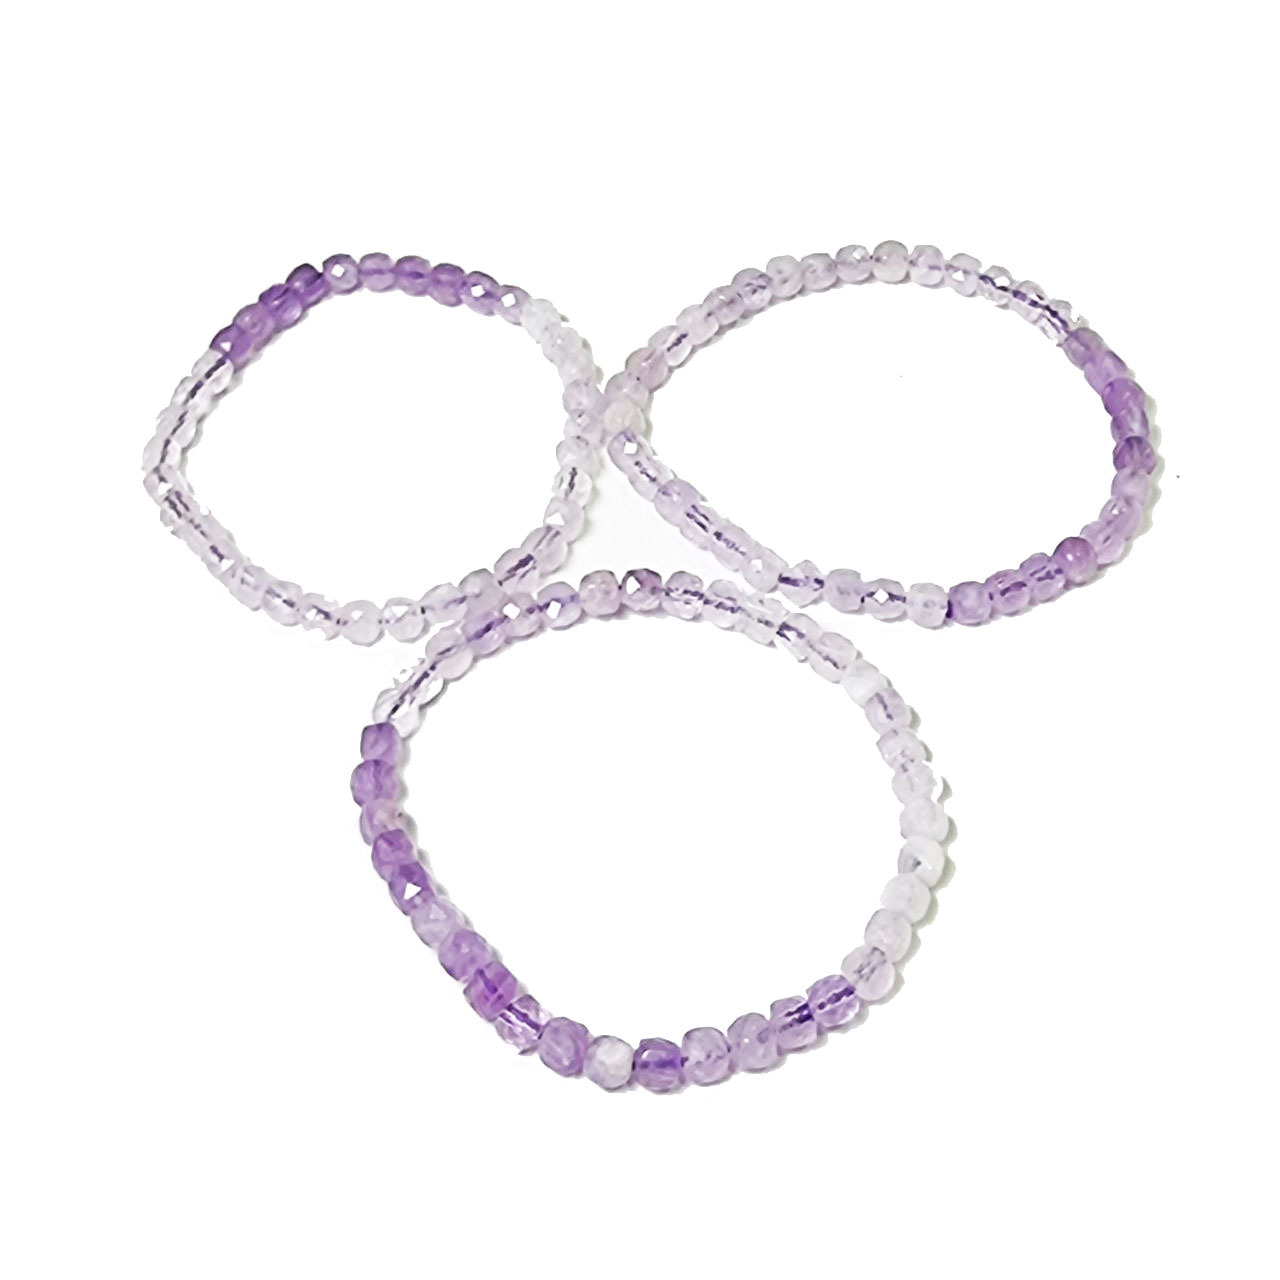 Faceted Lavender Amethyst Bracelet - 4mm